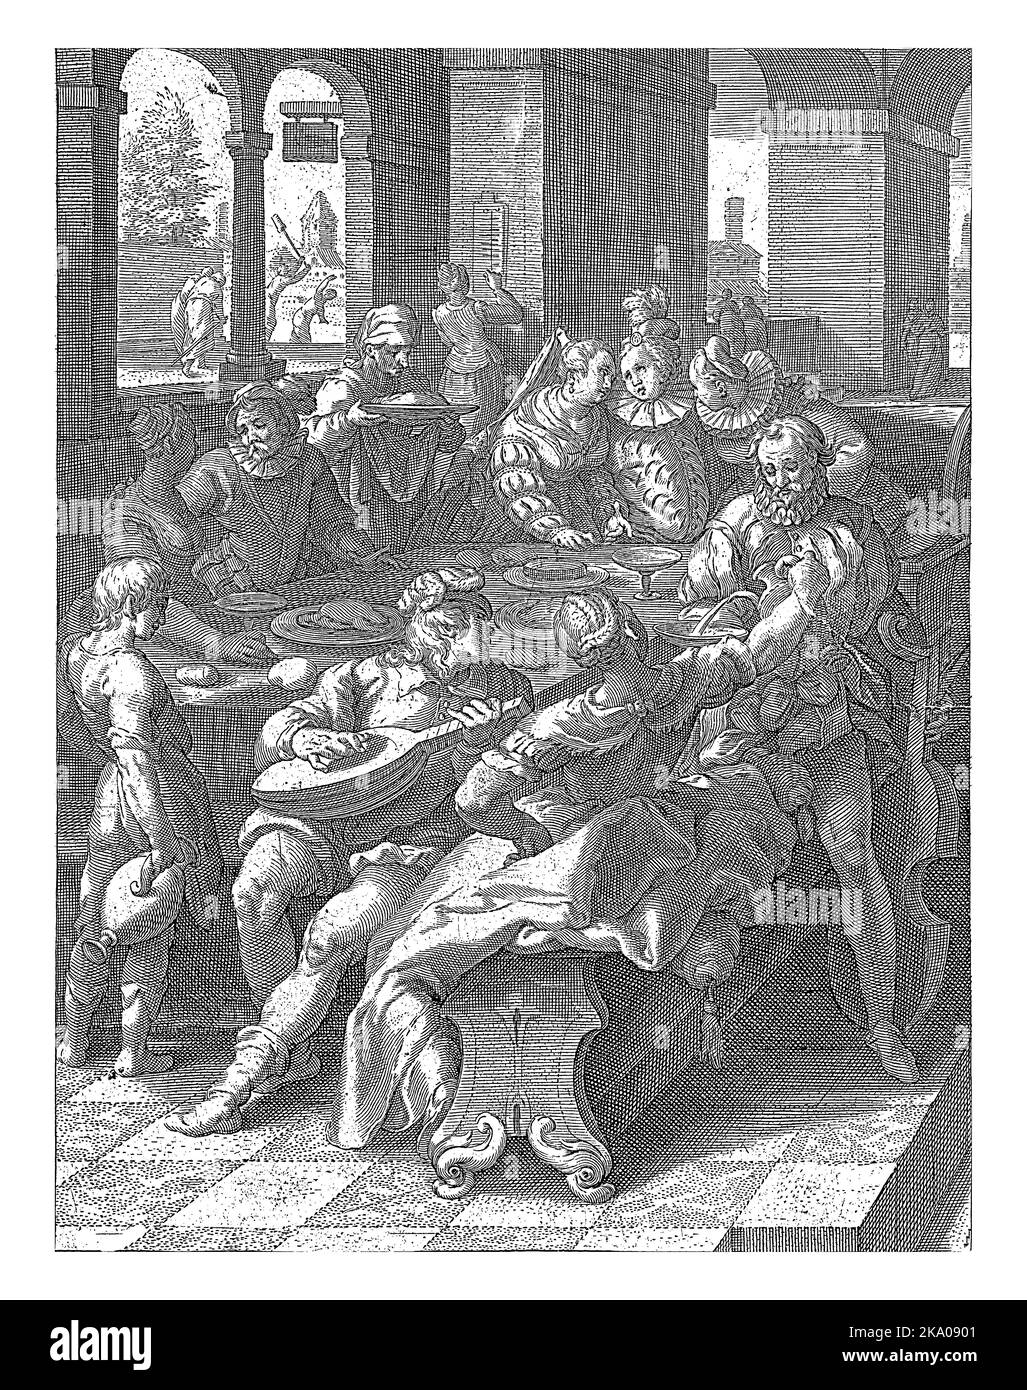 Herren und Kurtisanen an einem Tisch, an dem die Menschen essen, trinken und Musik machen. Im Hintergrund wird der verlorene Sohn weggeschickt, nachdem er al verbracht hat Stockfoto